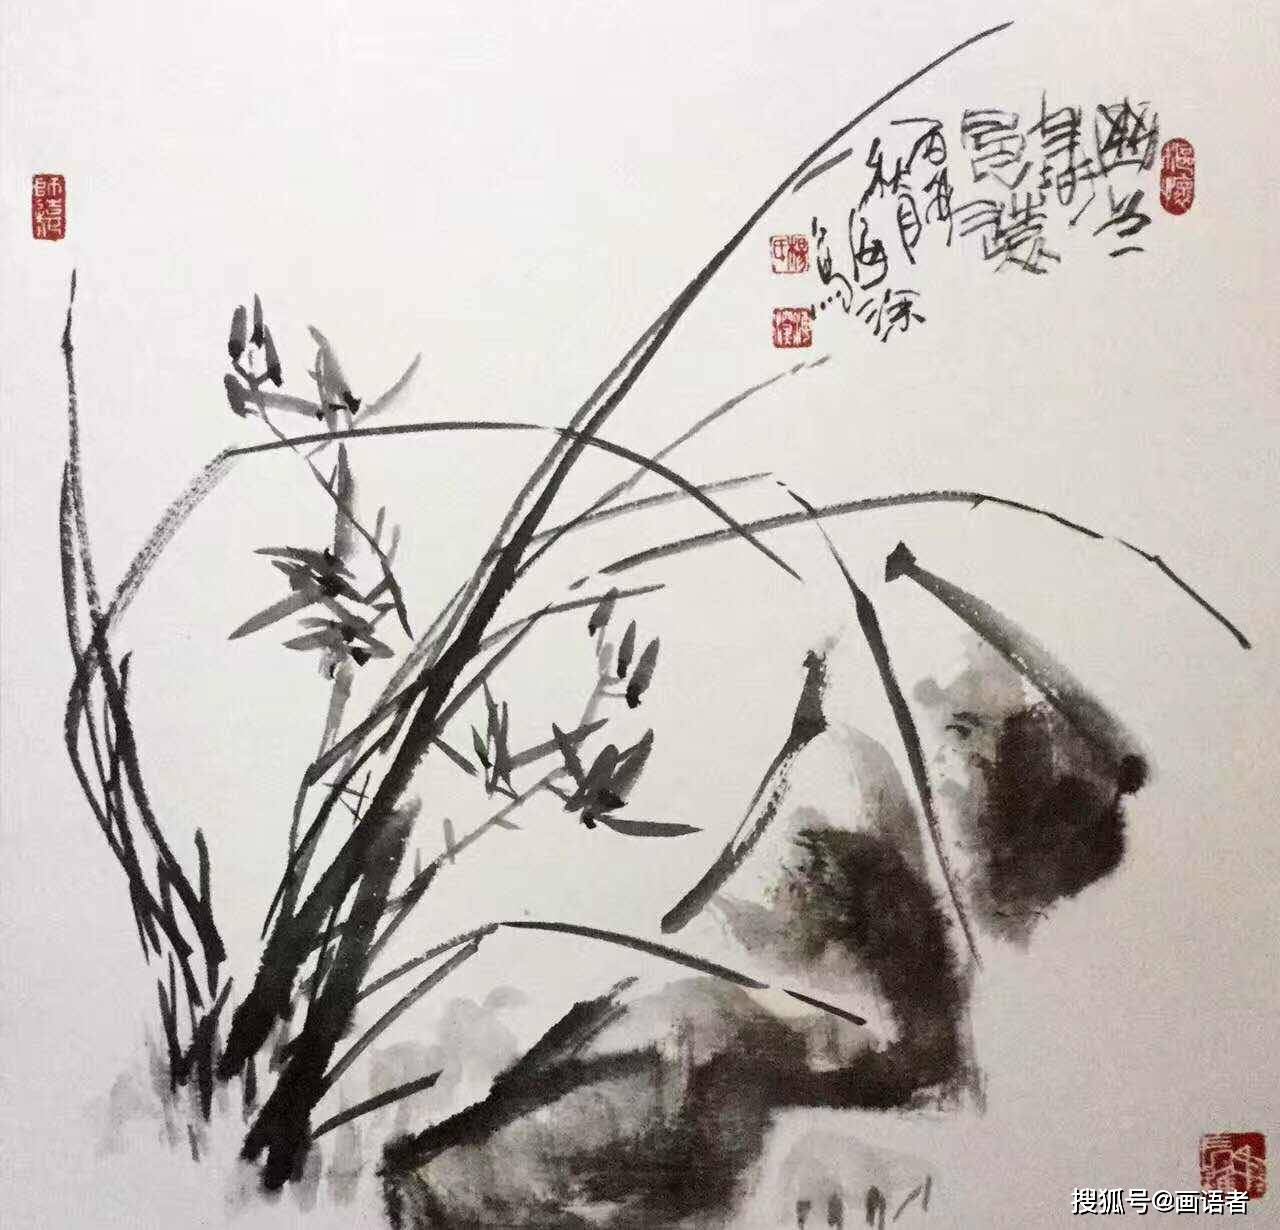 张羽  在中国,梅兰竹菊被誉为花中四君子,兰花的幽静与君子之风相契合